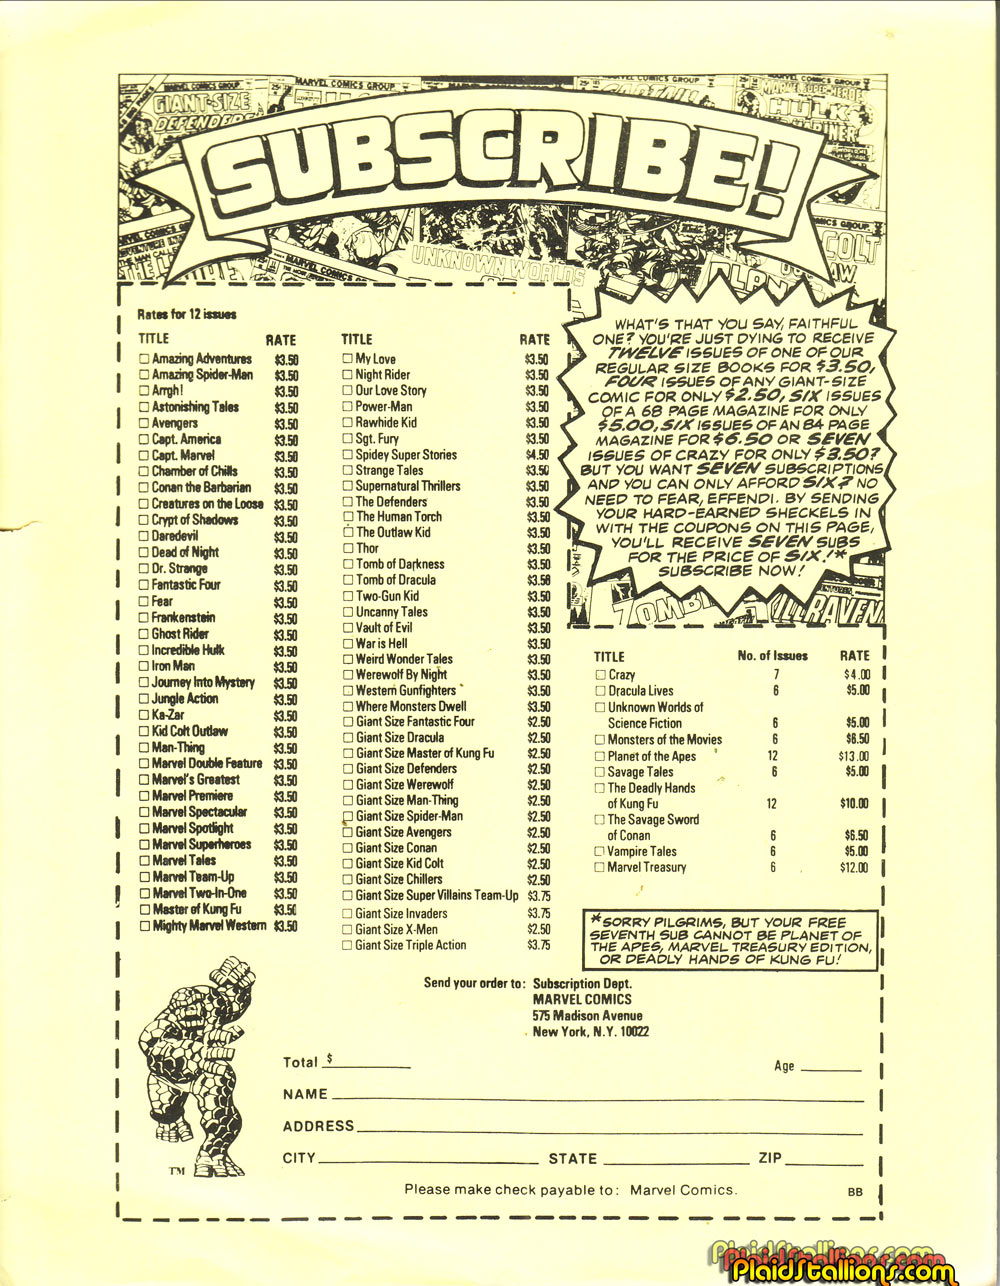 1975 Marvel Mail Order Catalog